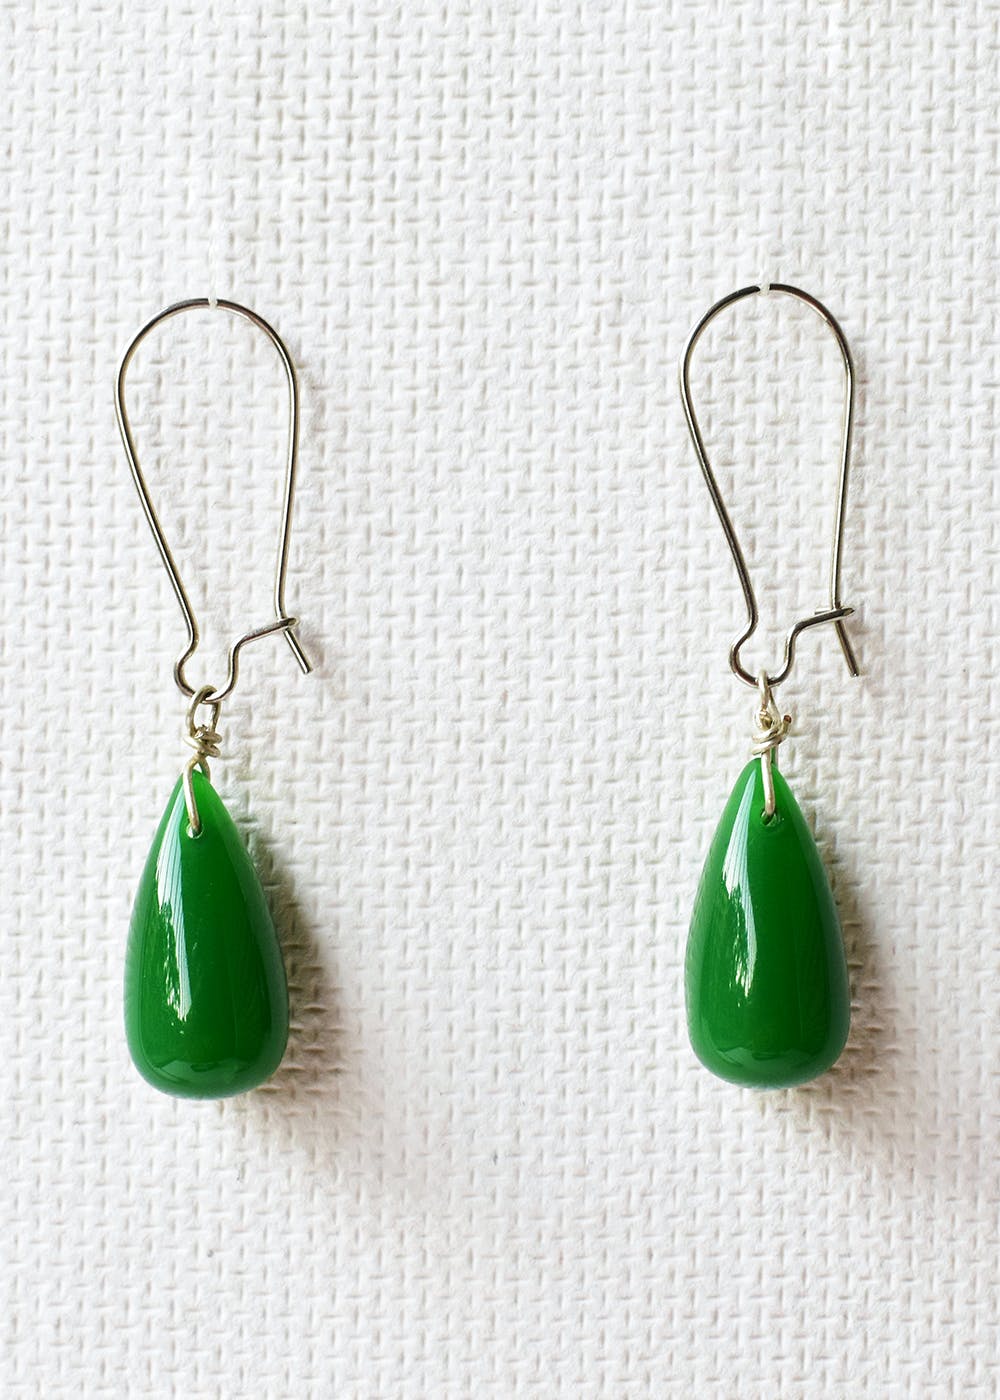 Green Jade Earrings  Type A Burmese Jade  ClassicJade